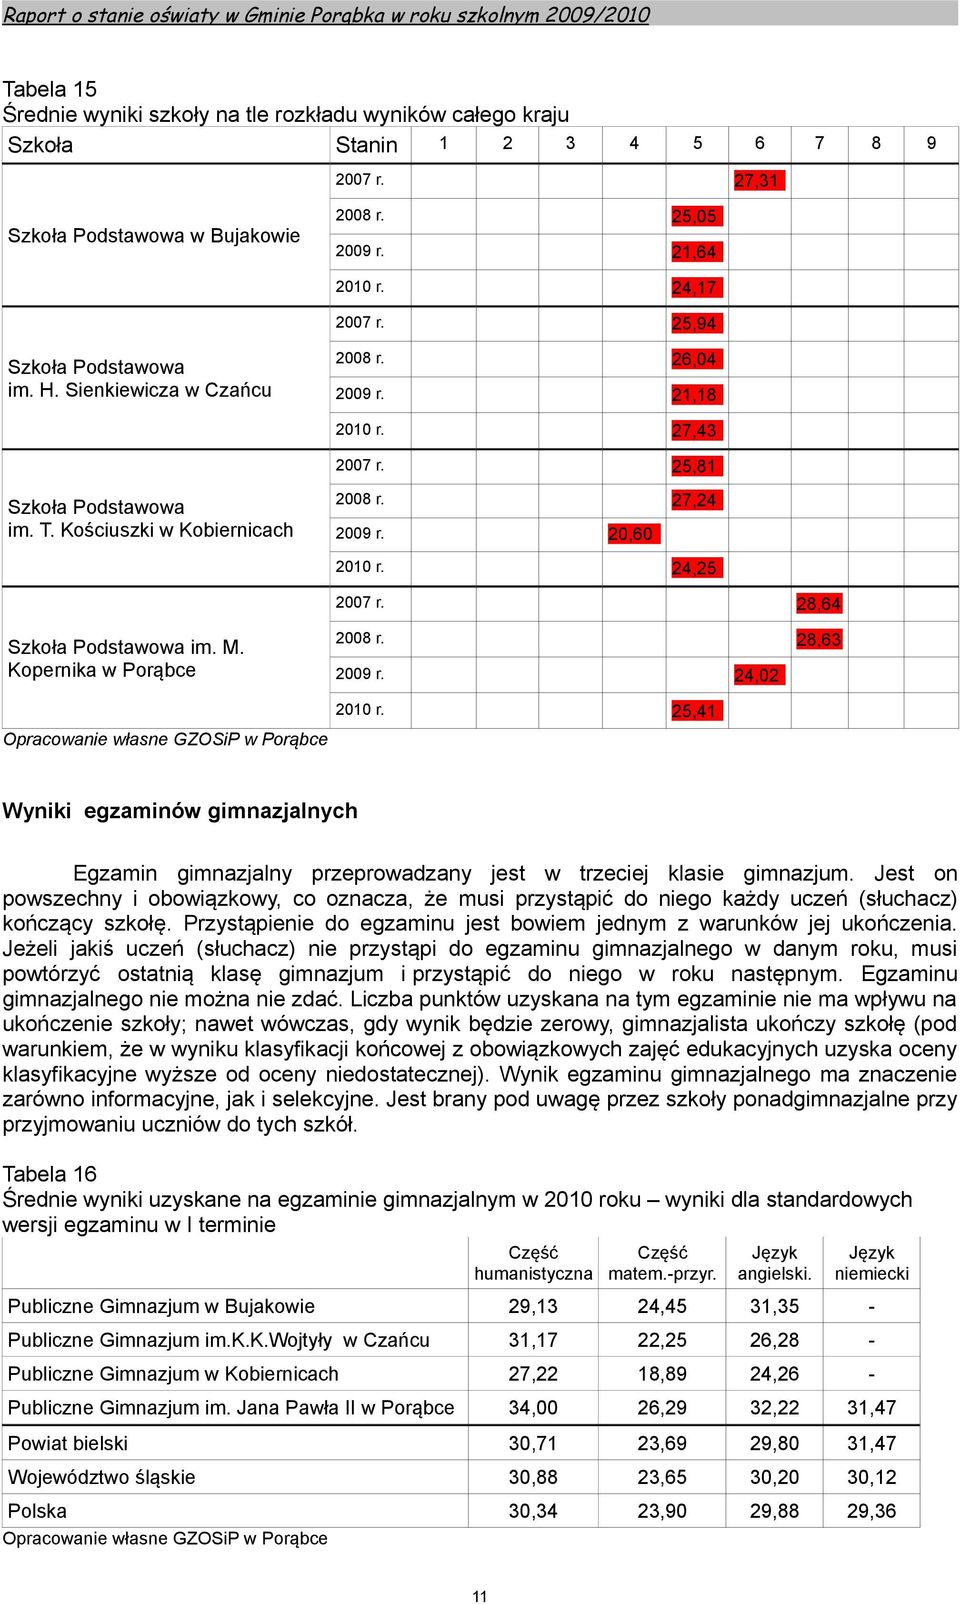 24,25 2007 r. 28,64 Szkoła Podstawowa im. M. Kopernika w Porąbce 2008 r. 28,63 2009 r. 24,02 2010 r.